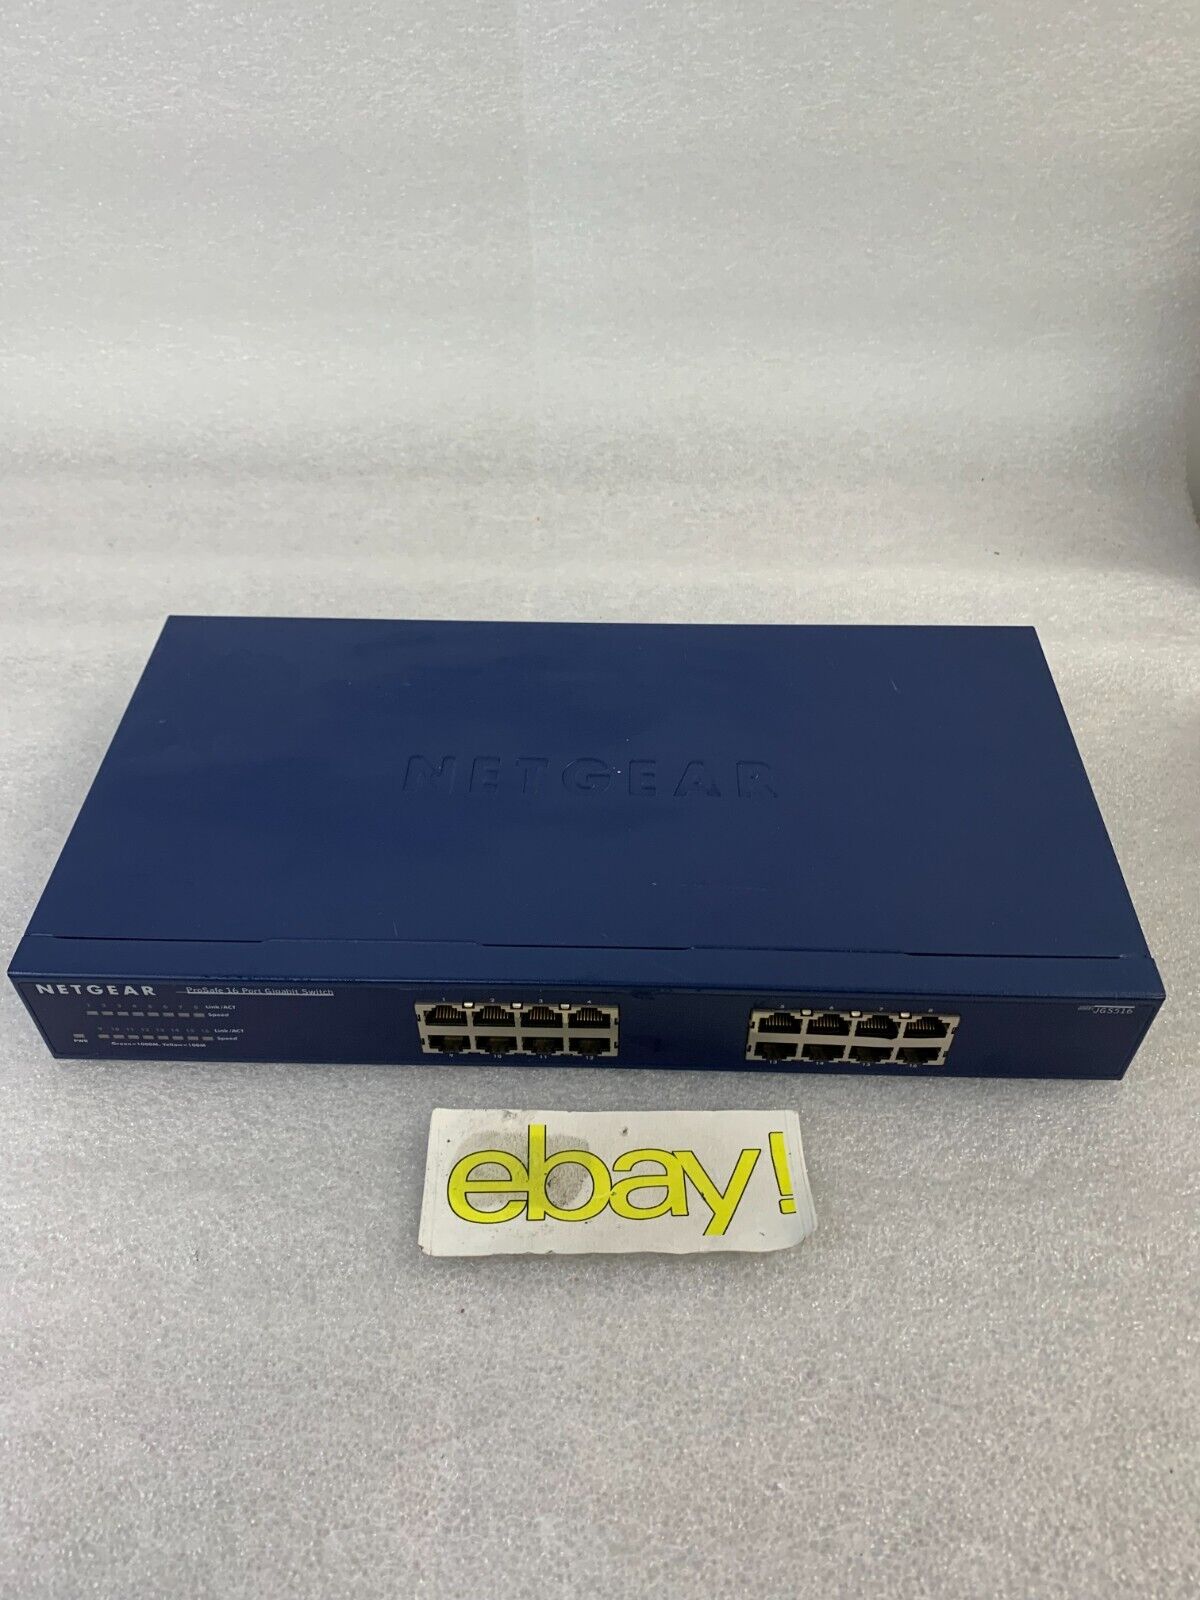 Netgear ProSafe 16-Port Gigabit Ethernet Switch JGS516 v2 UNT ONLY 